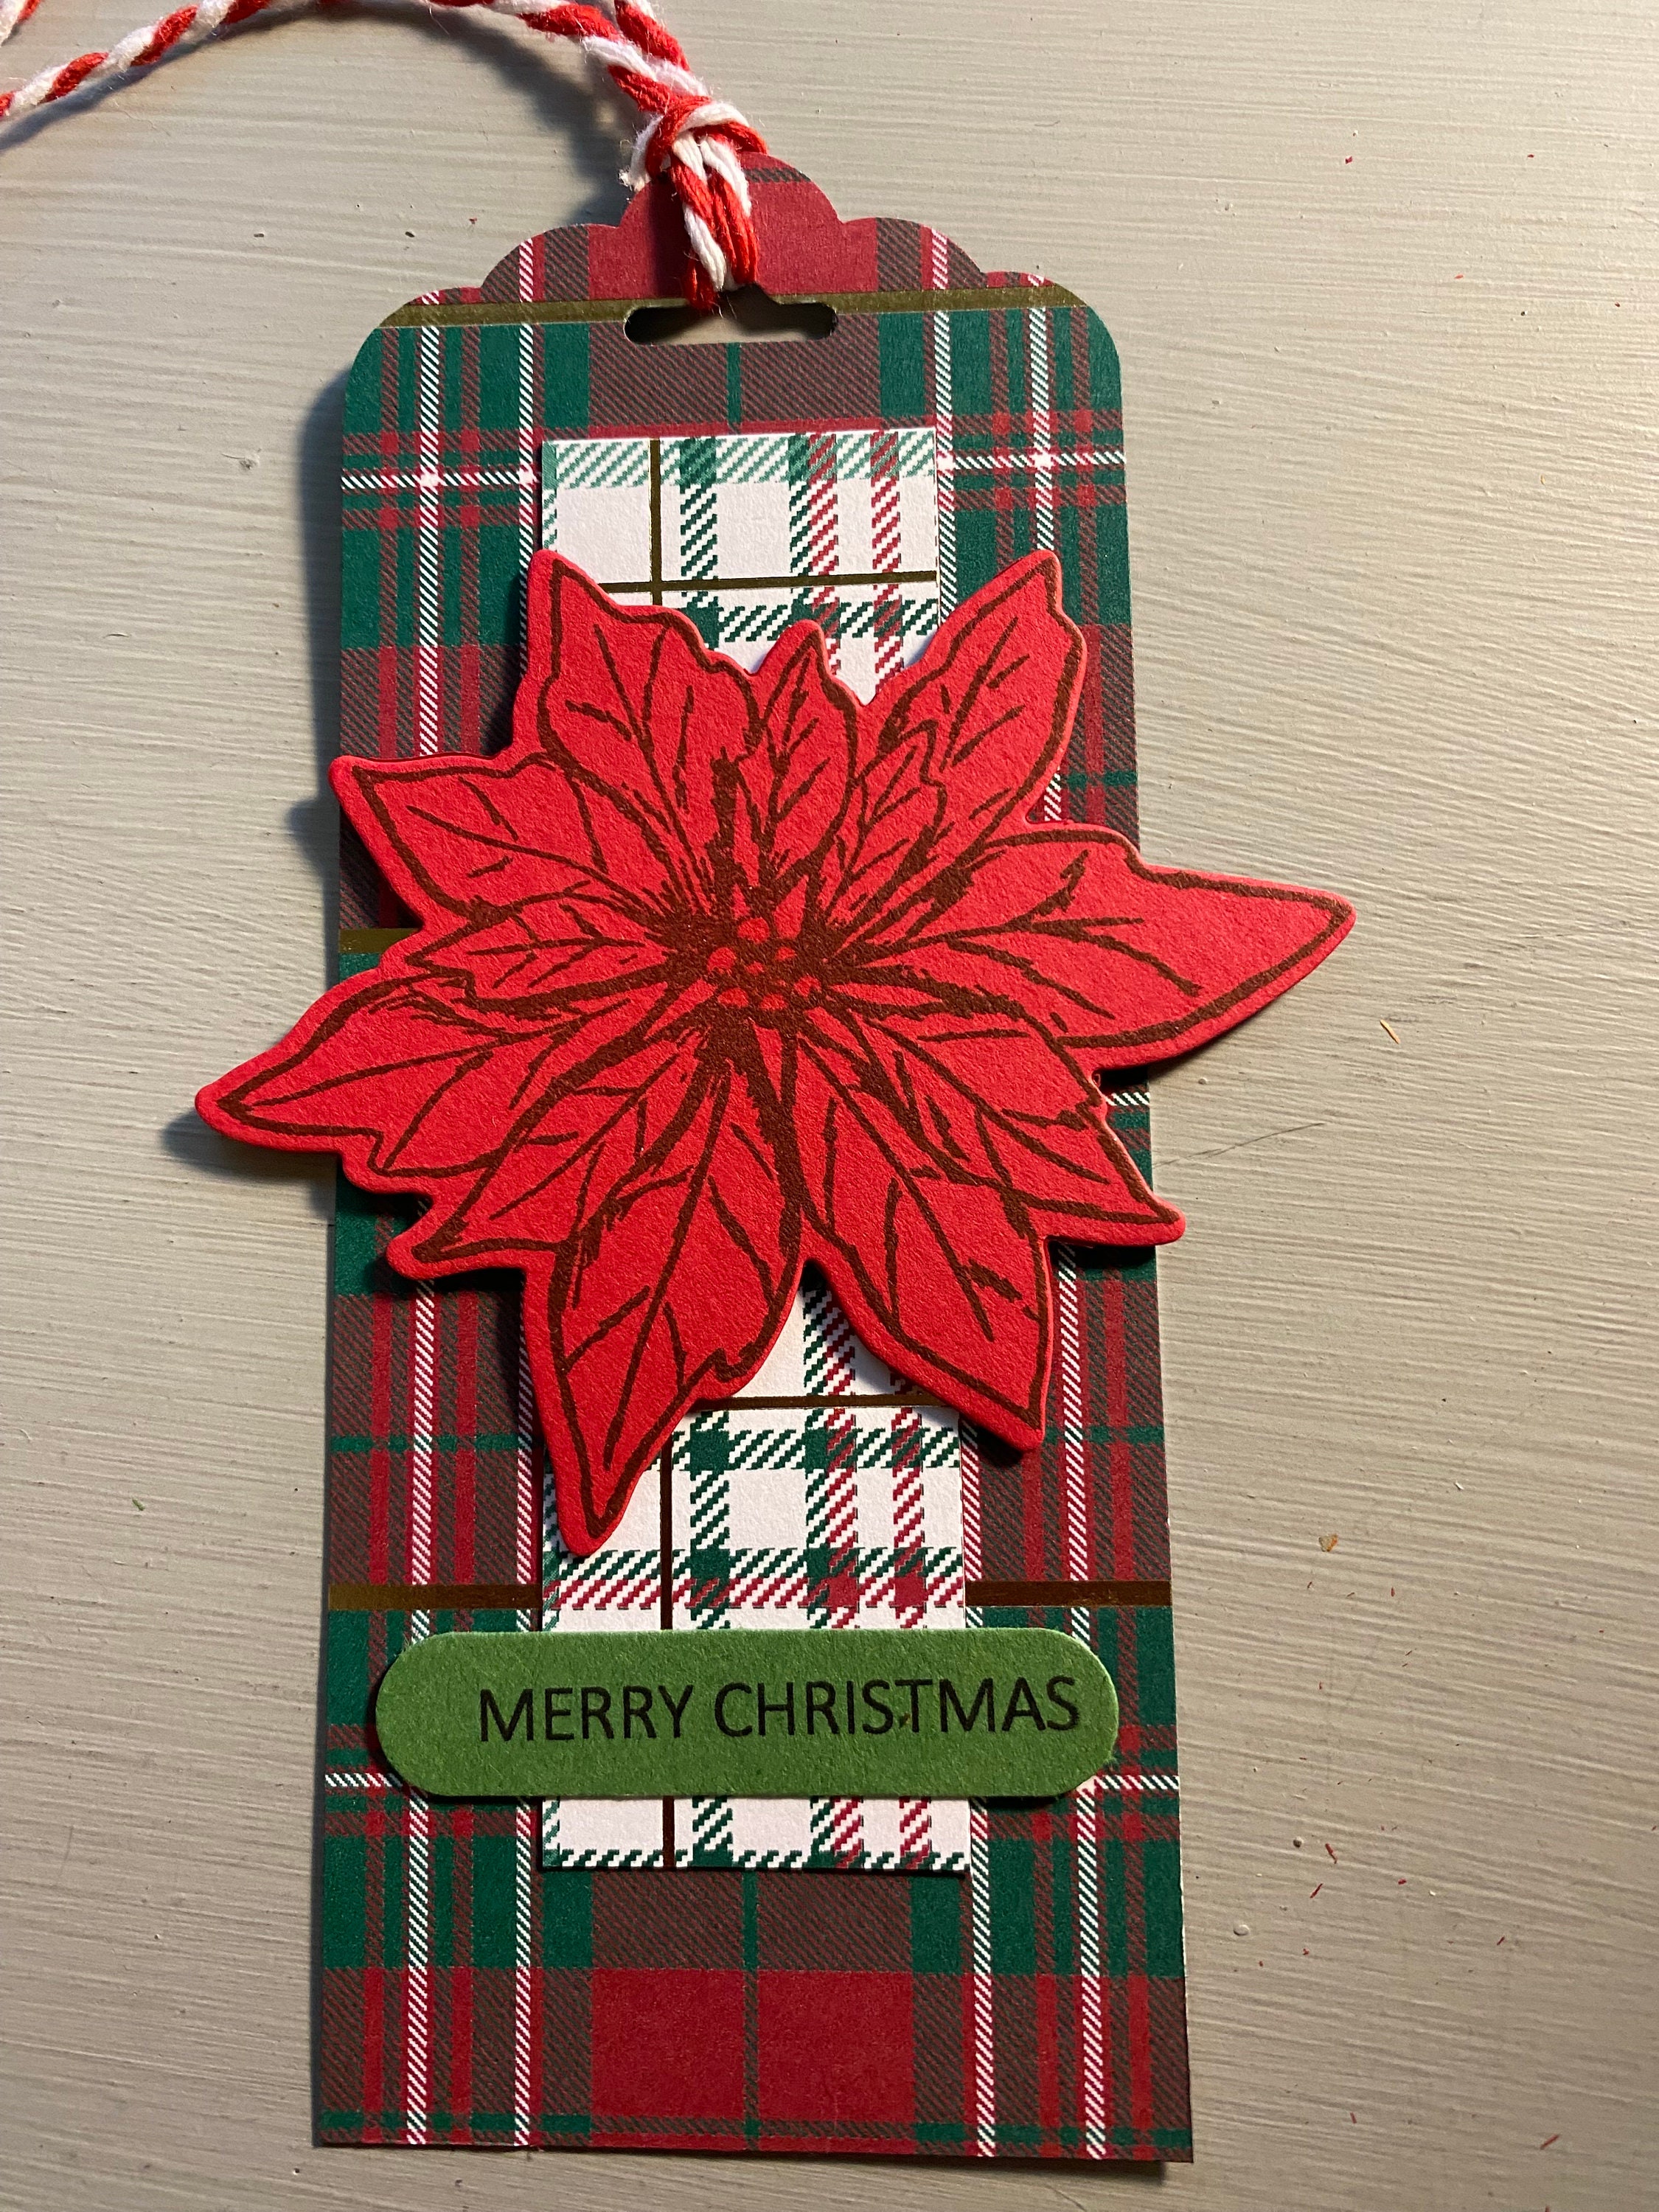 Christmas Gift Tags, Gift Tags, Tags, Handmade, Holiday, Christmas,  Christmas Tags, Holiday Gift Tags, Charlie Brown, Tree, Christmas Tree 